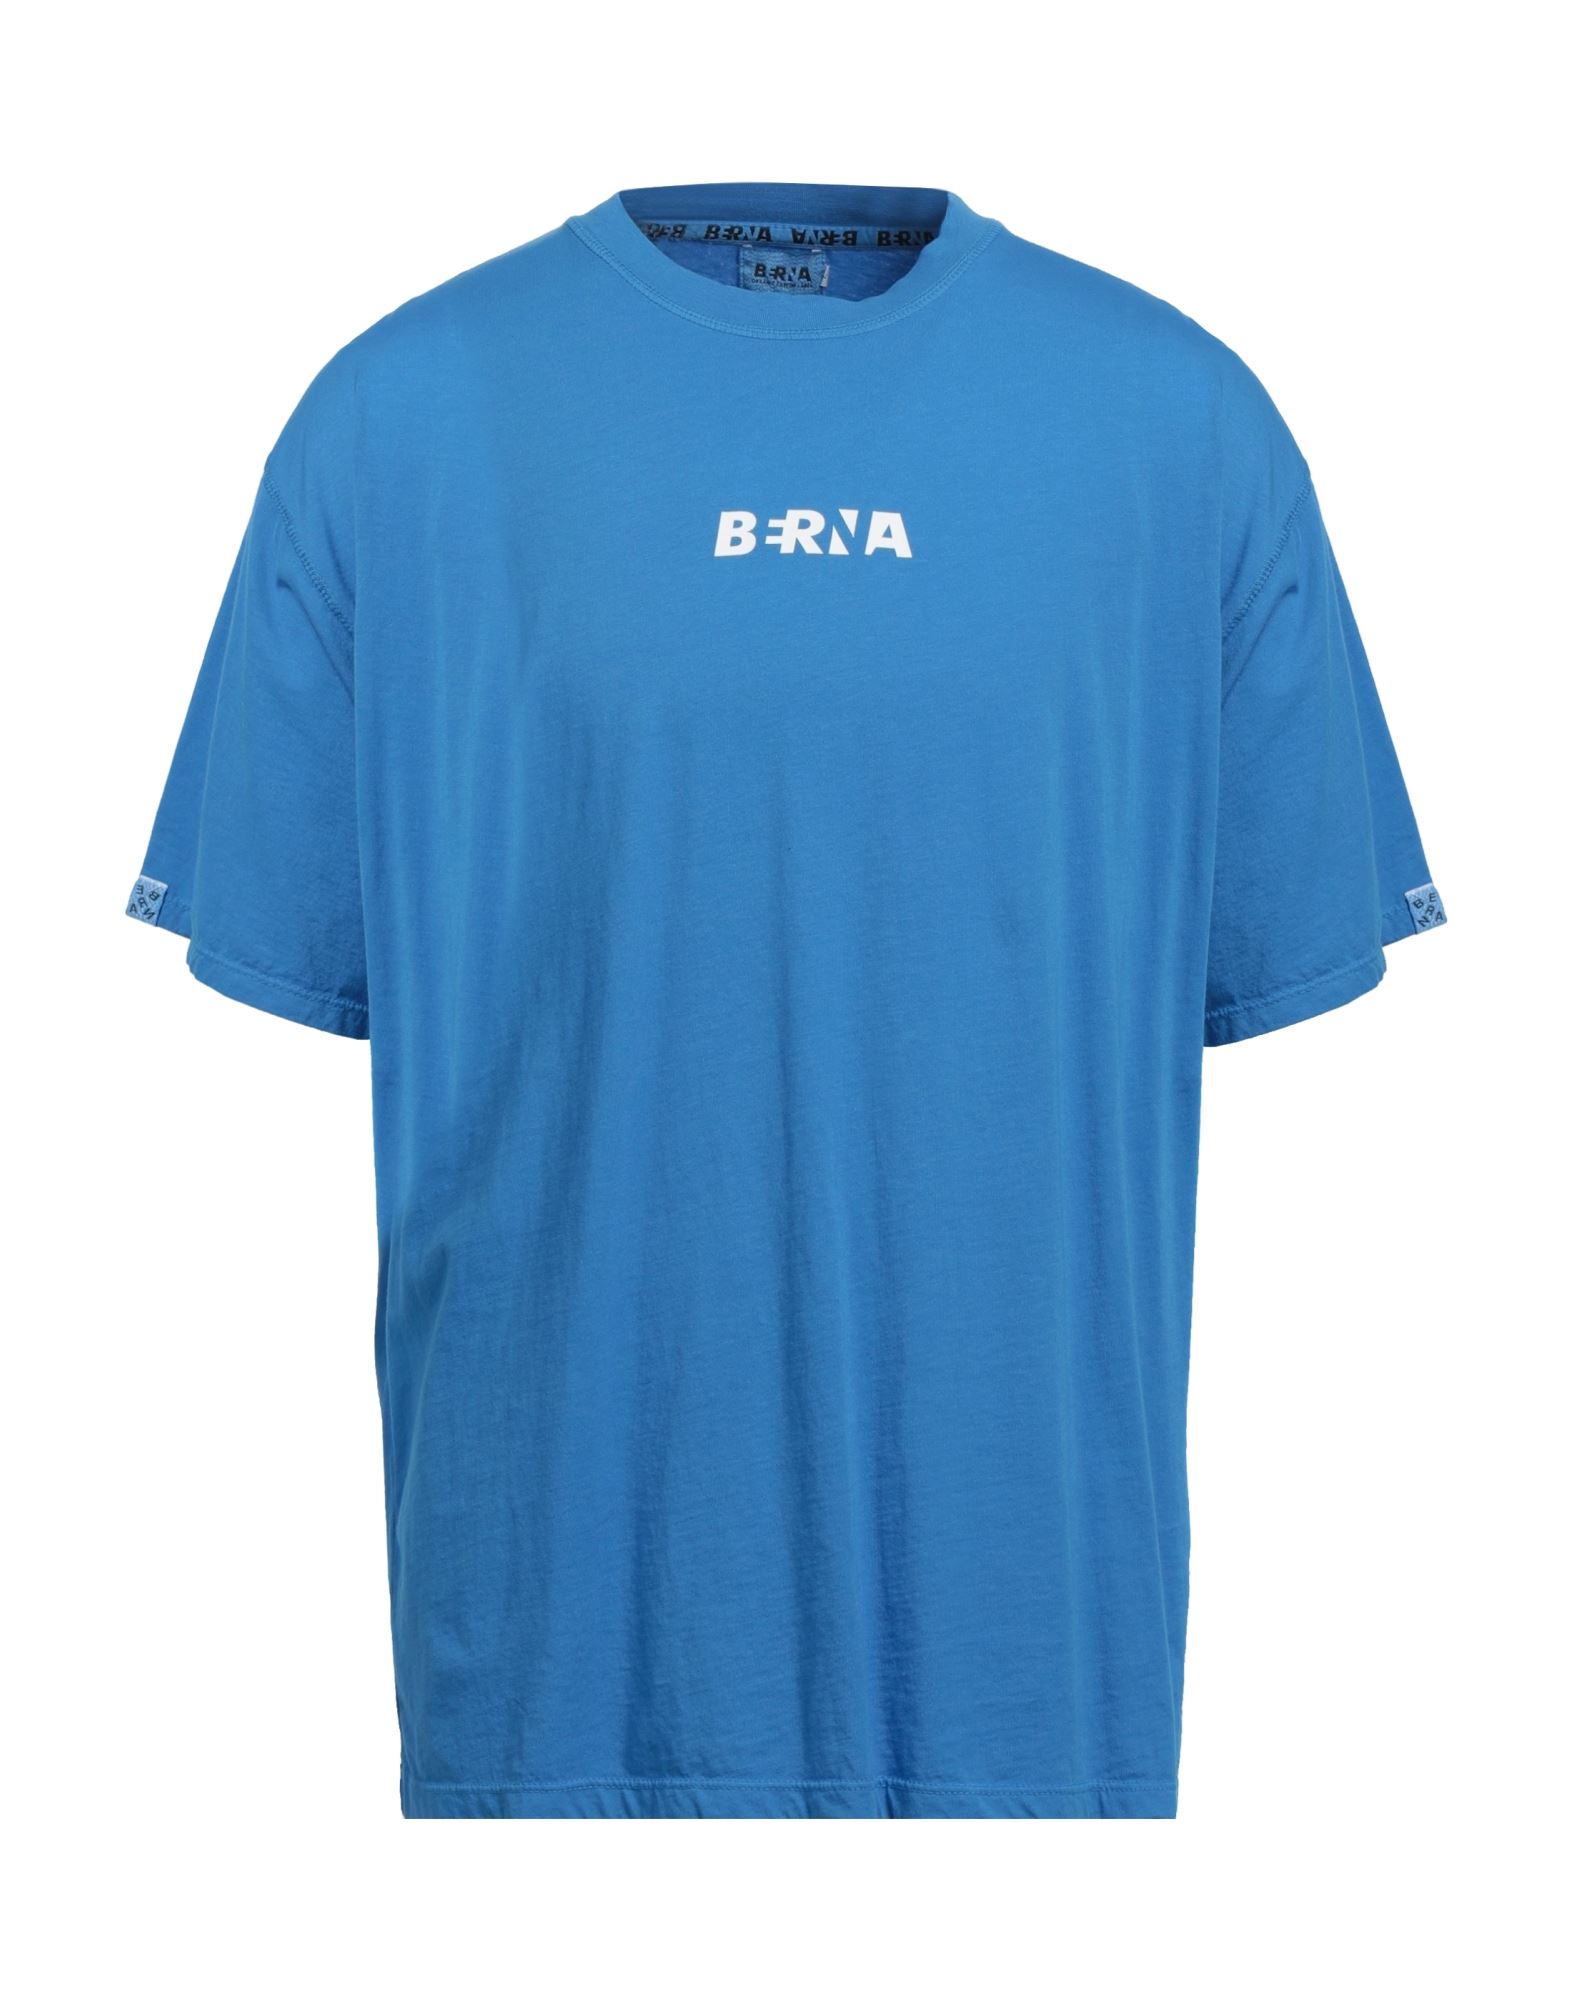 BERNA T-shirts Herren Azurblau von BERNA